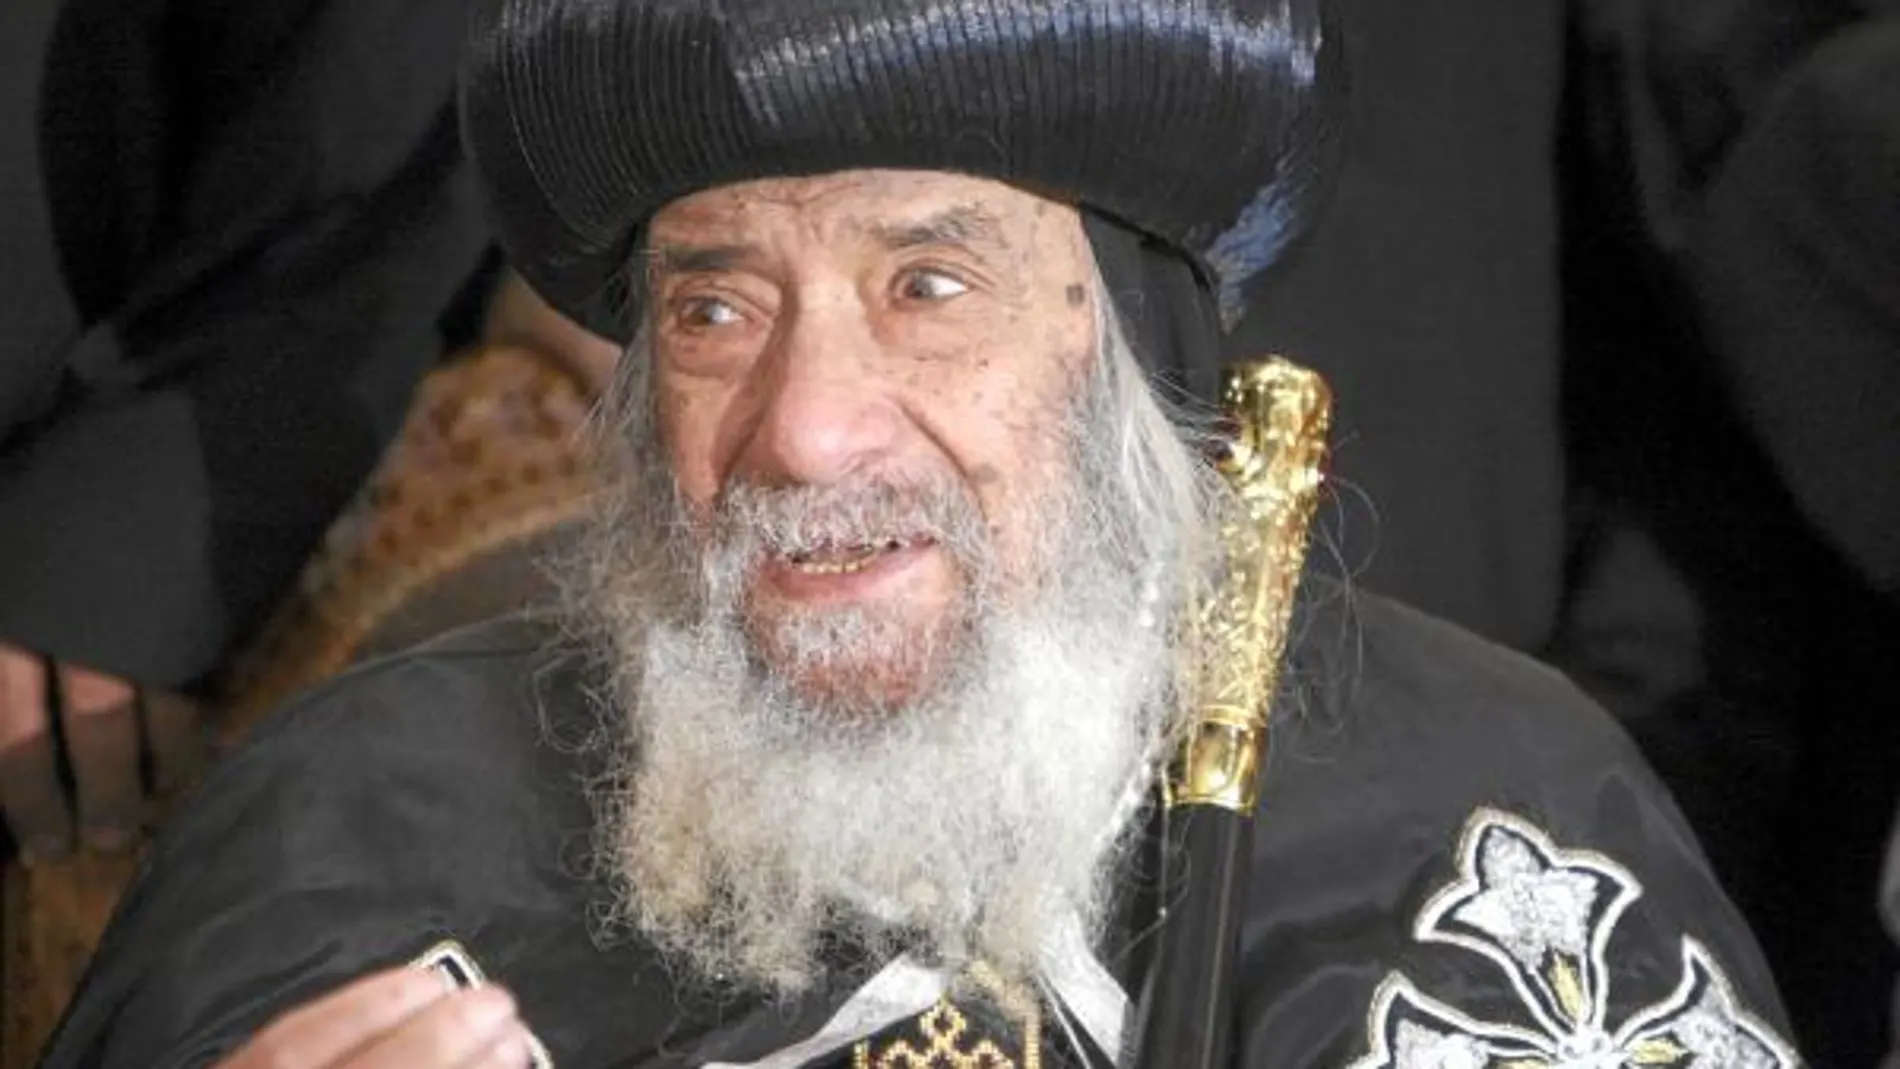 El Papa ortodoxo Shenuda III exige a Mubarak que garantice la seguridad a los cristianos